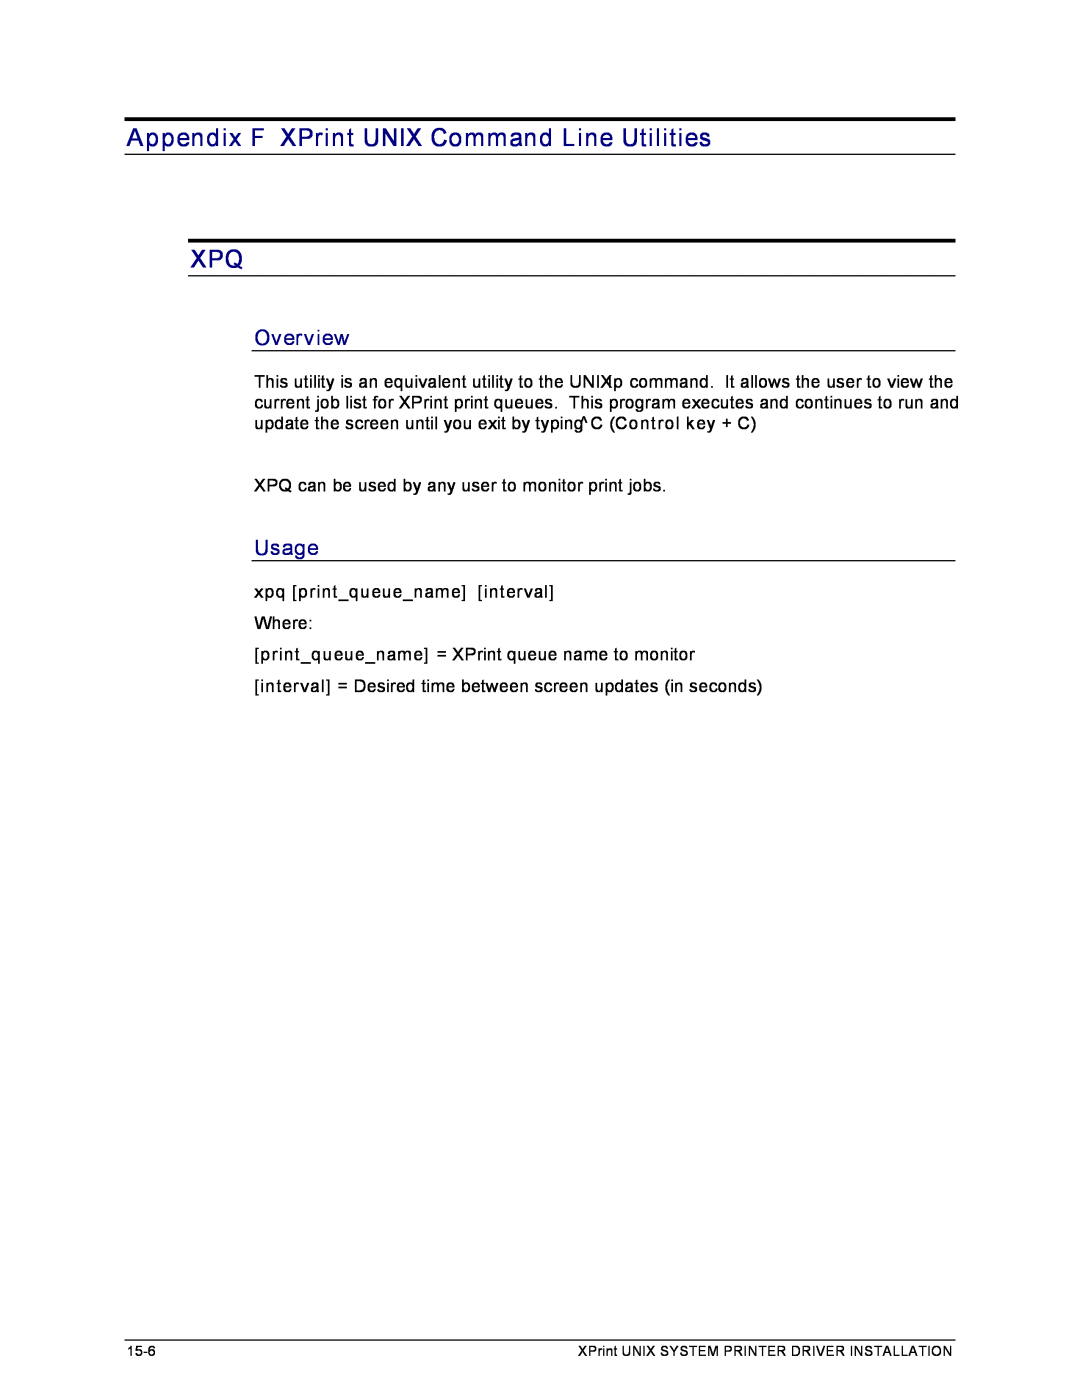 Xerox 701P91273 manual Appendix F XPrint UNIX Command Line Utilities XPQ, Overview, Usage, xpq print_queue_name interval 